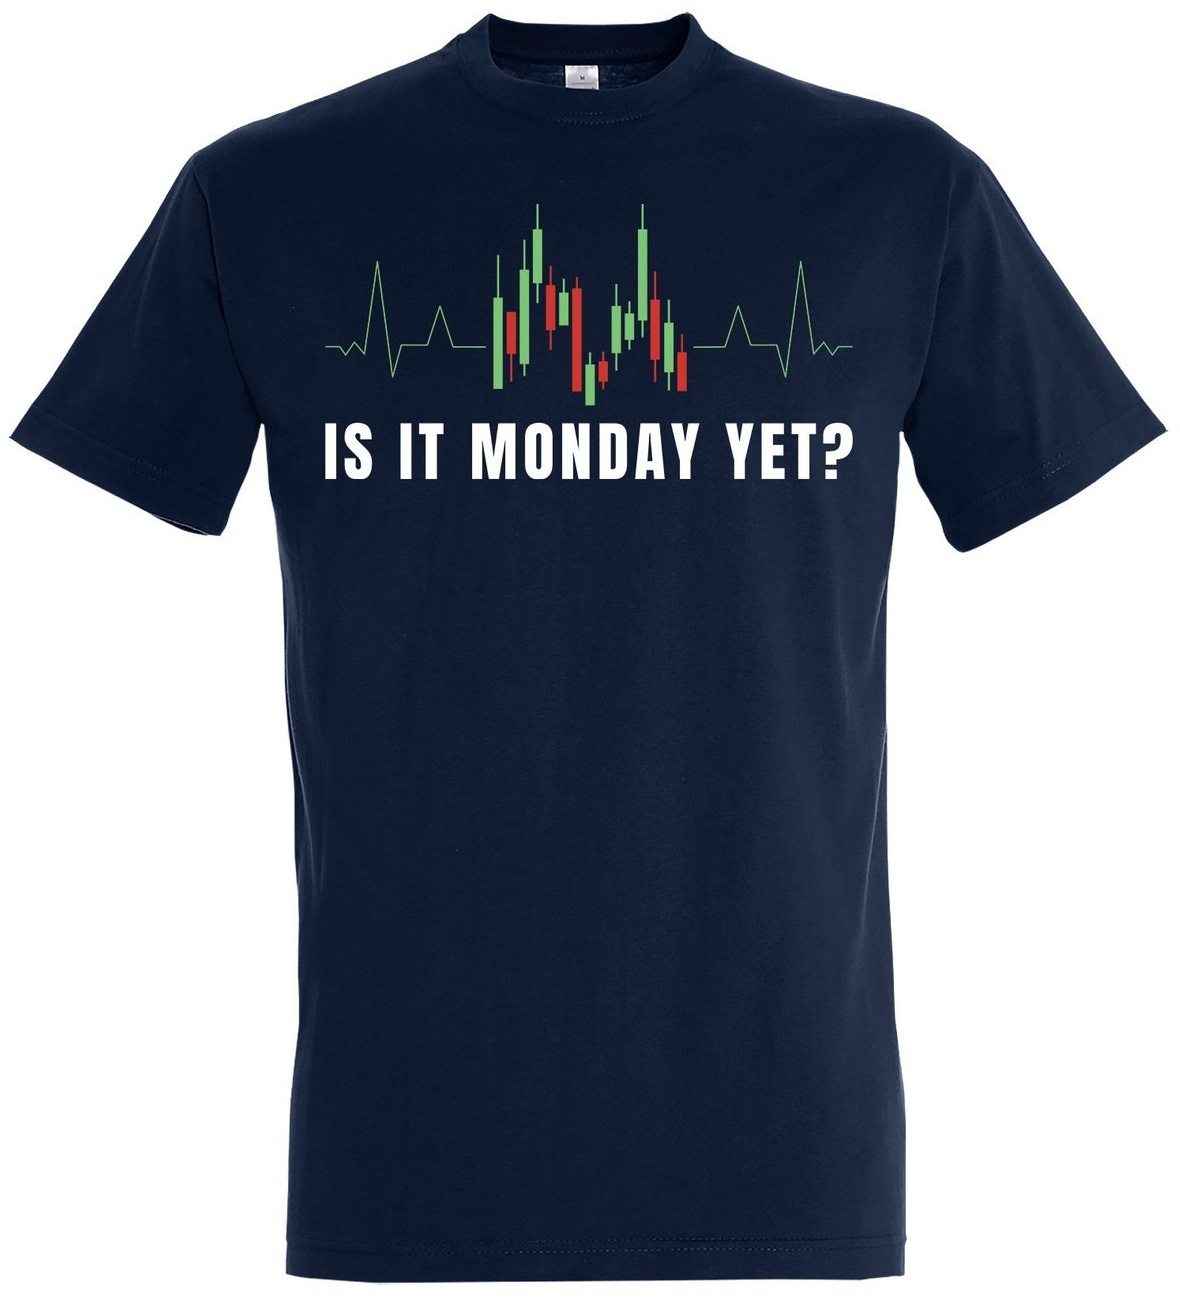 Youth Designz Print-Shirt "Is It Monday Yet?" Herren Shirt mit lustigem Spruch blau 4XL